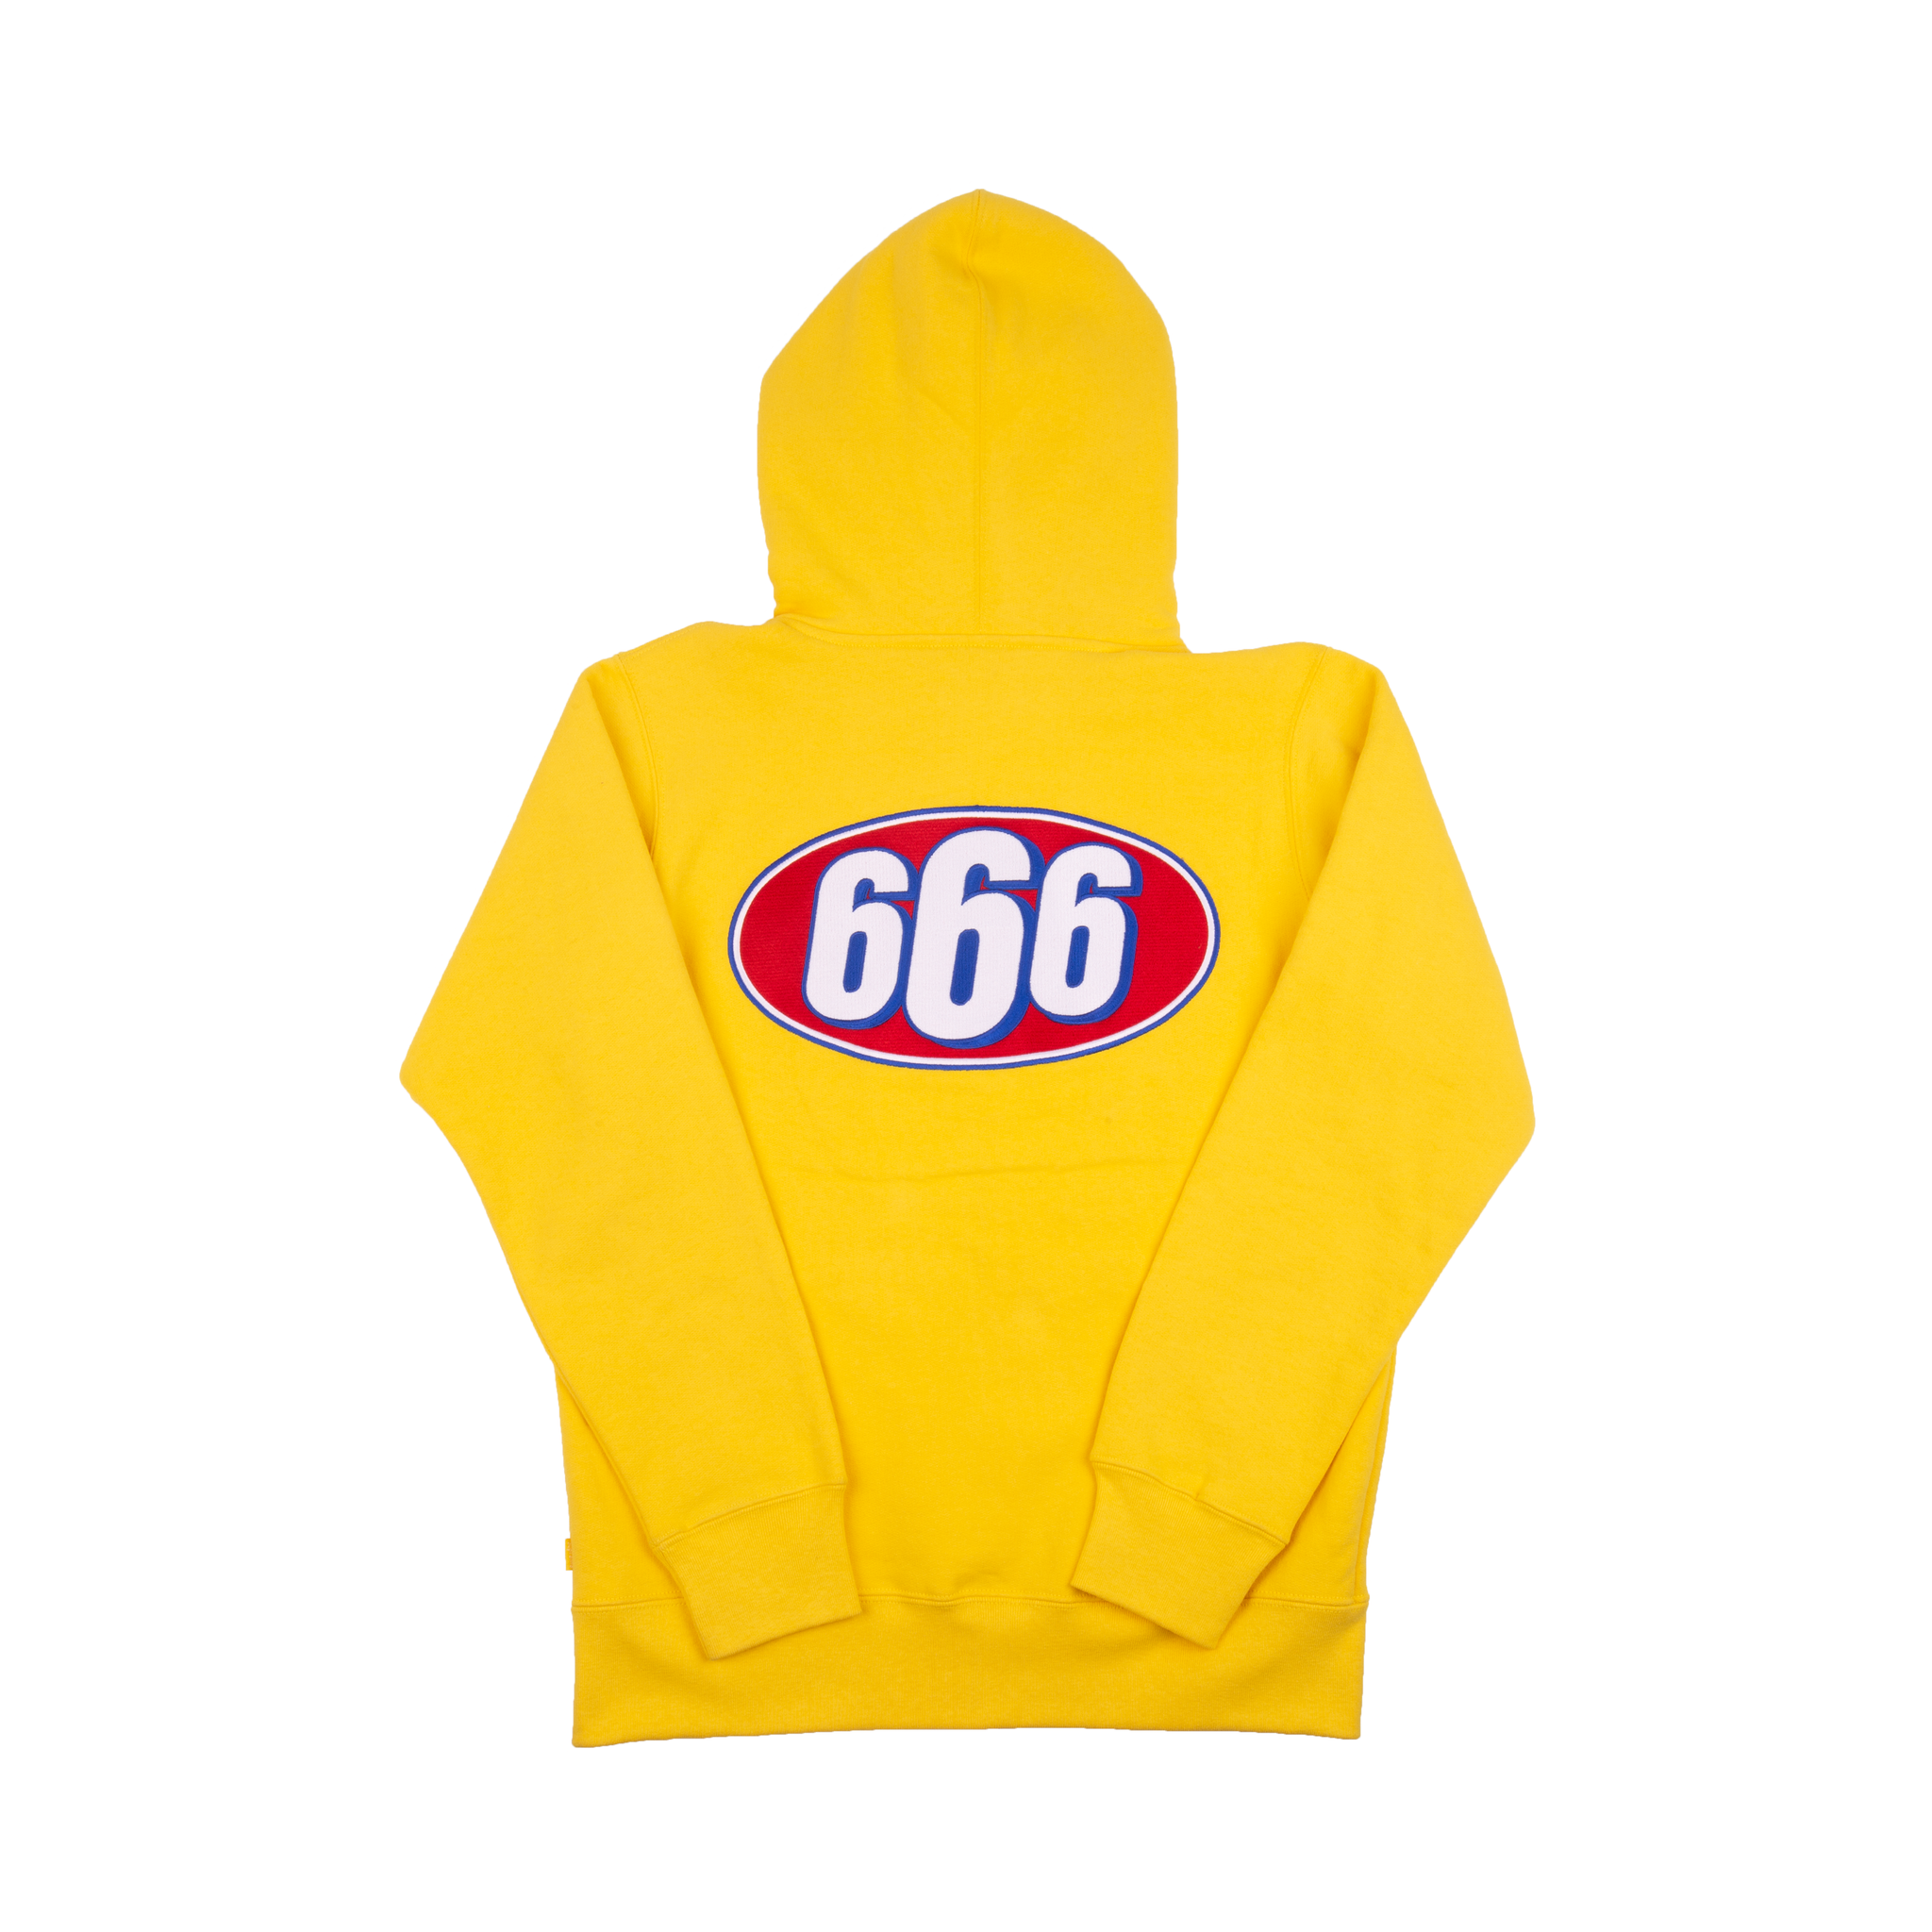 Supreme Yellow 666 Zip-Up Sweater